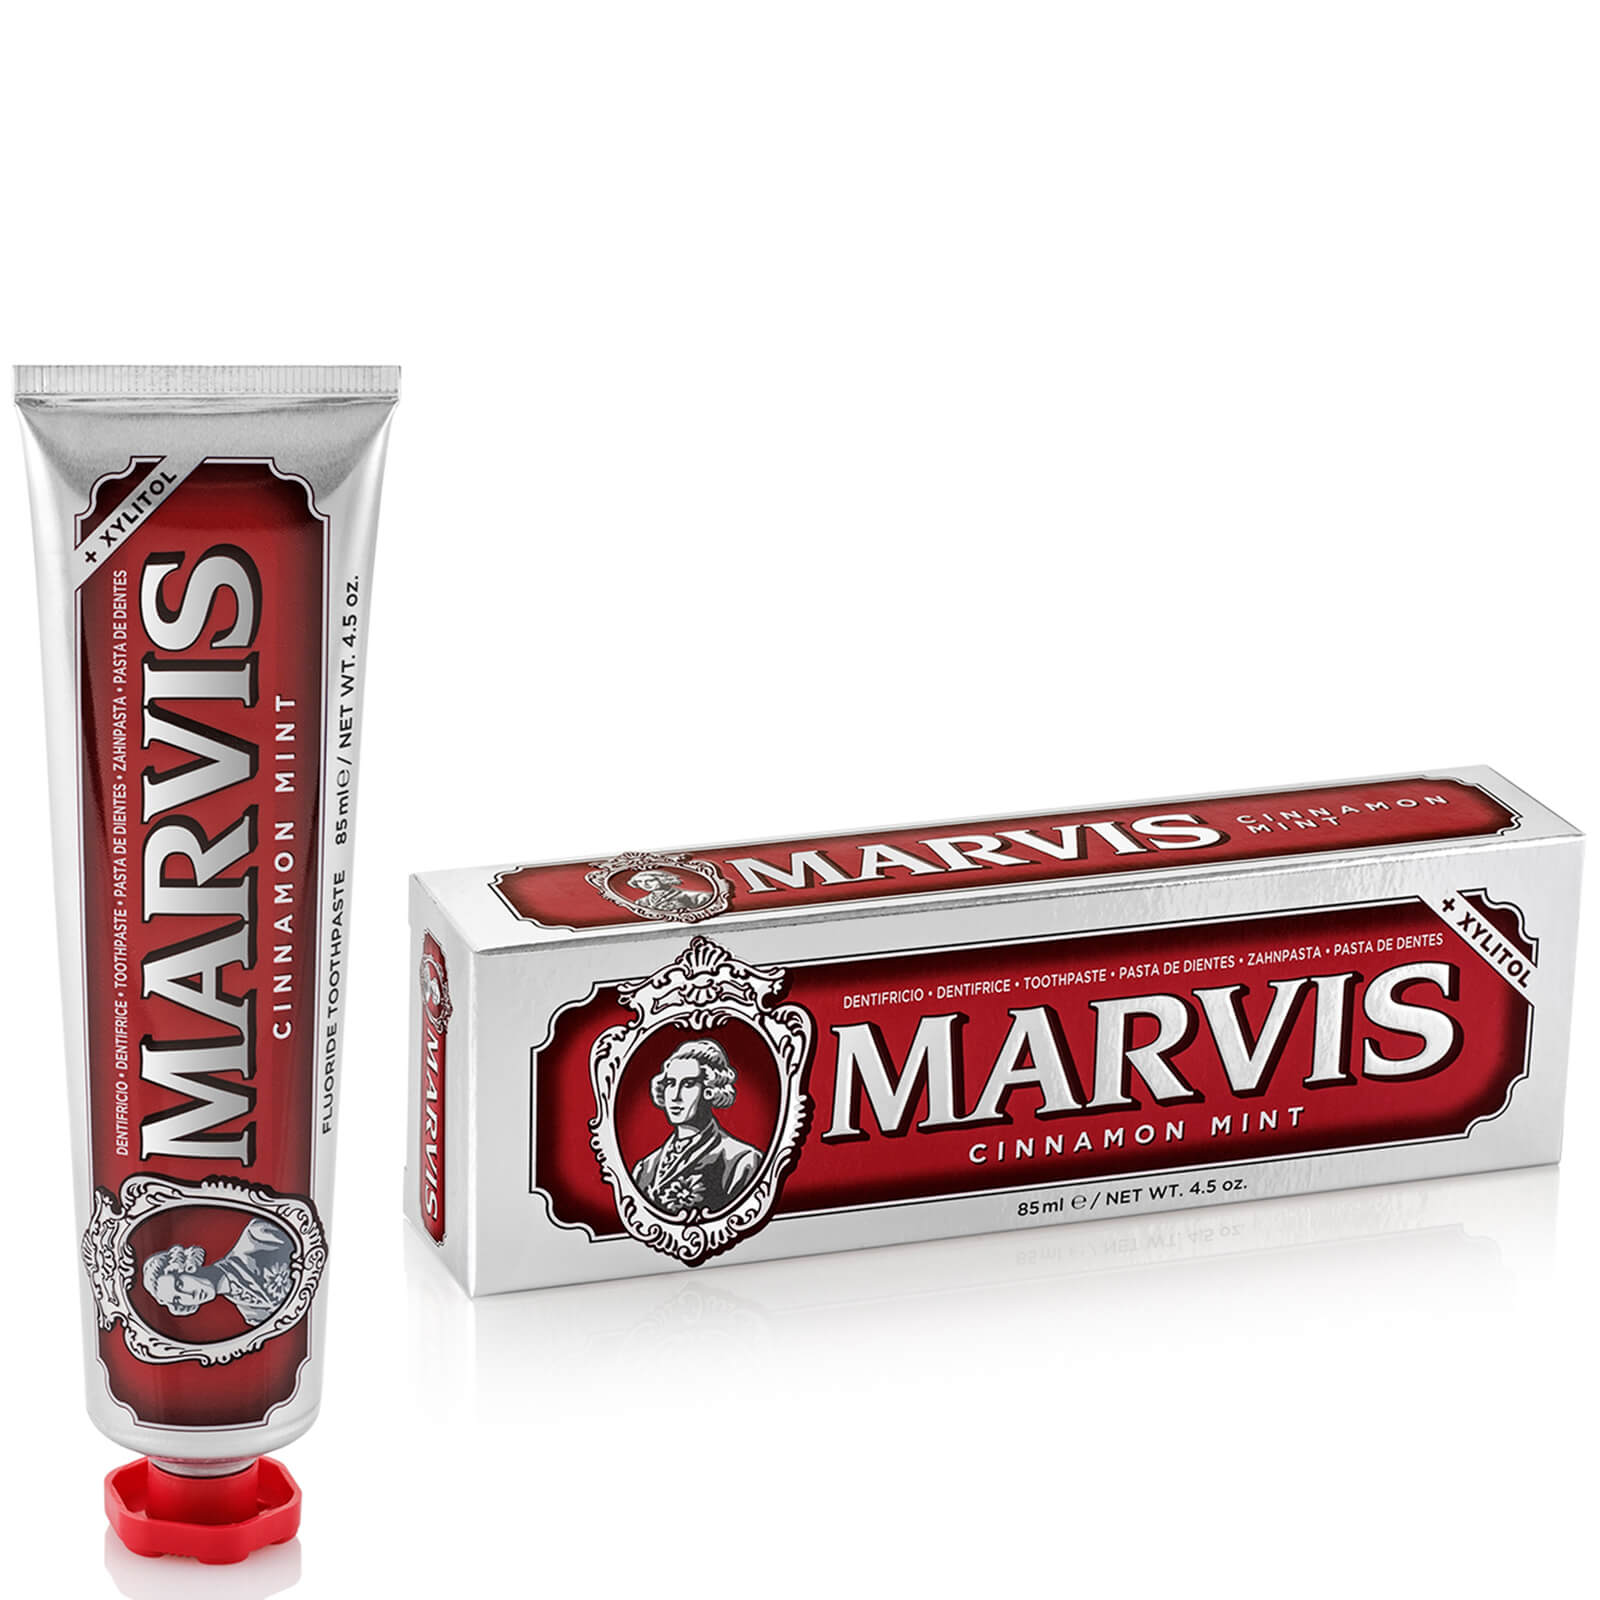 Marvis Cinnamon Mint Toothpaste 85ml lookfantastic.com imagine